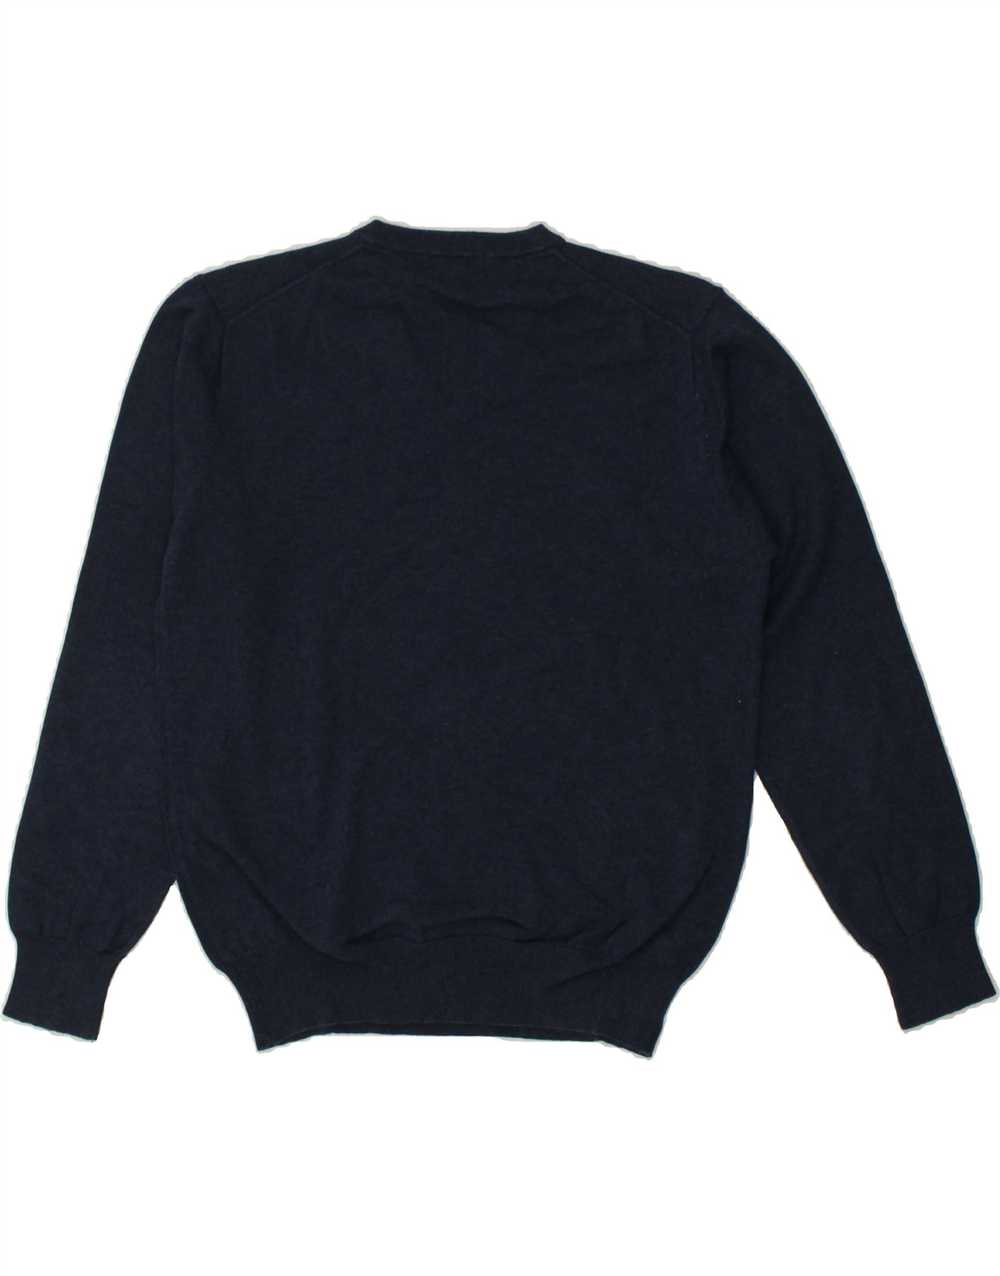 GANT Mens V-Neck Jumper Sweater Large Navy Blue C… - image 2